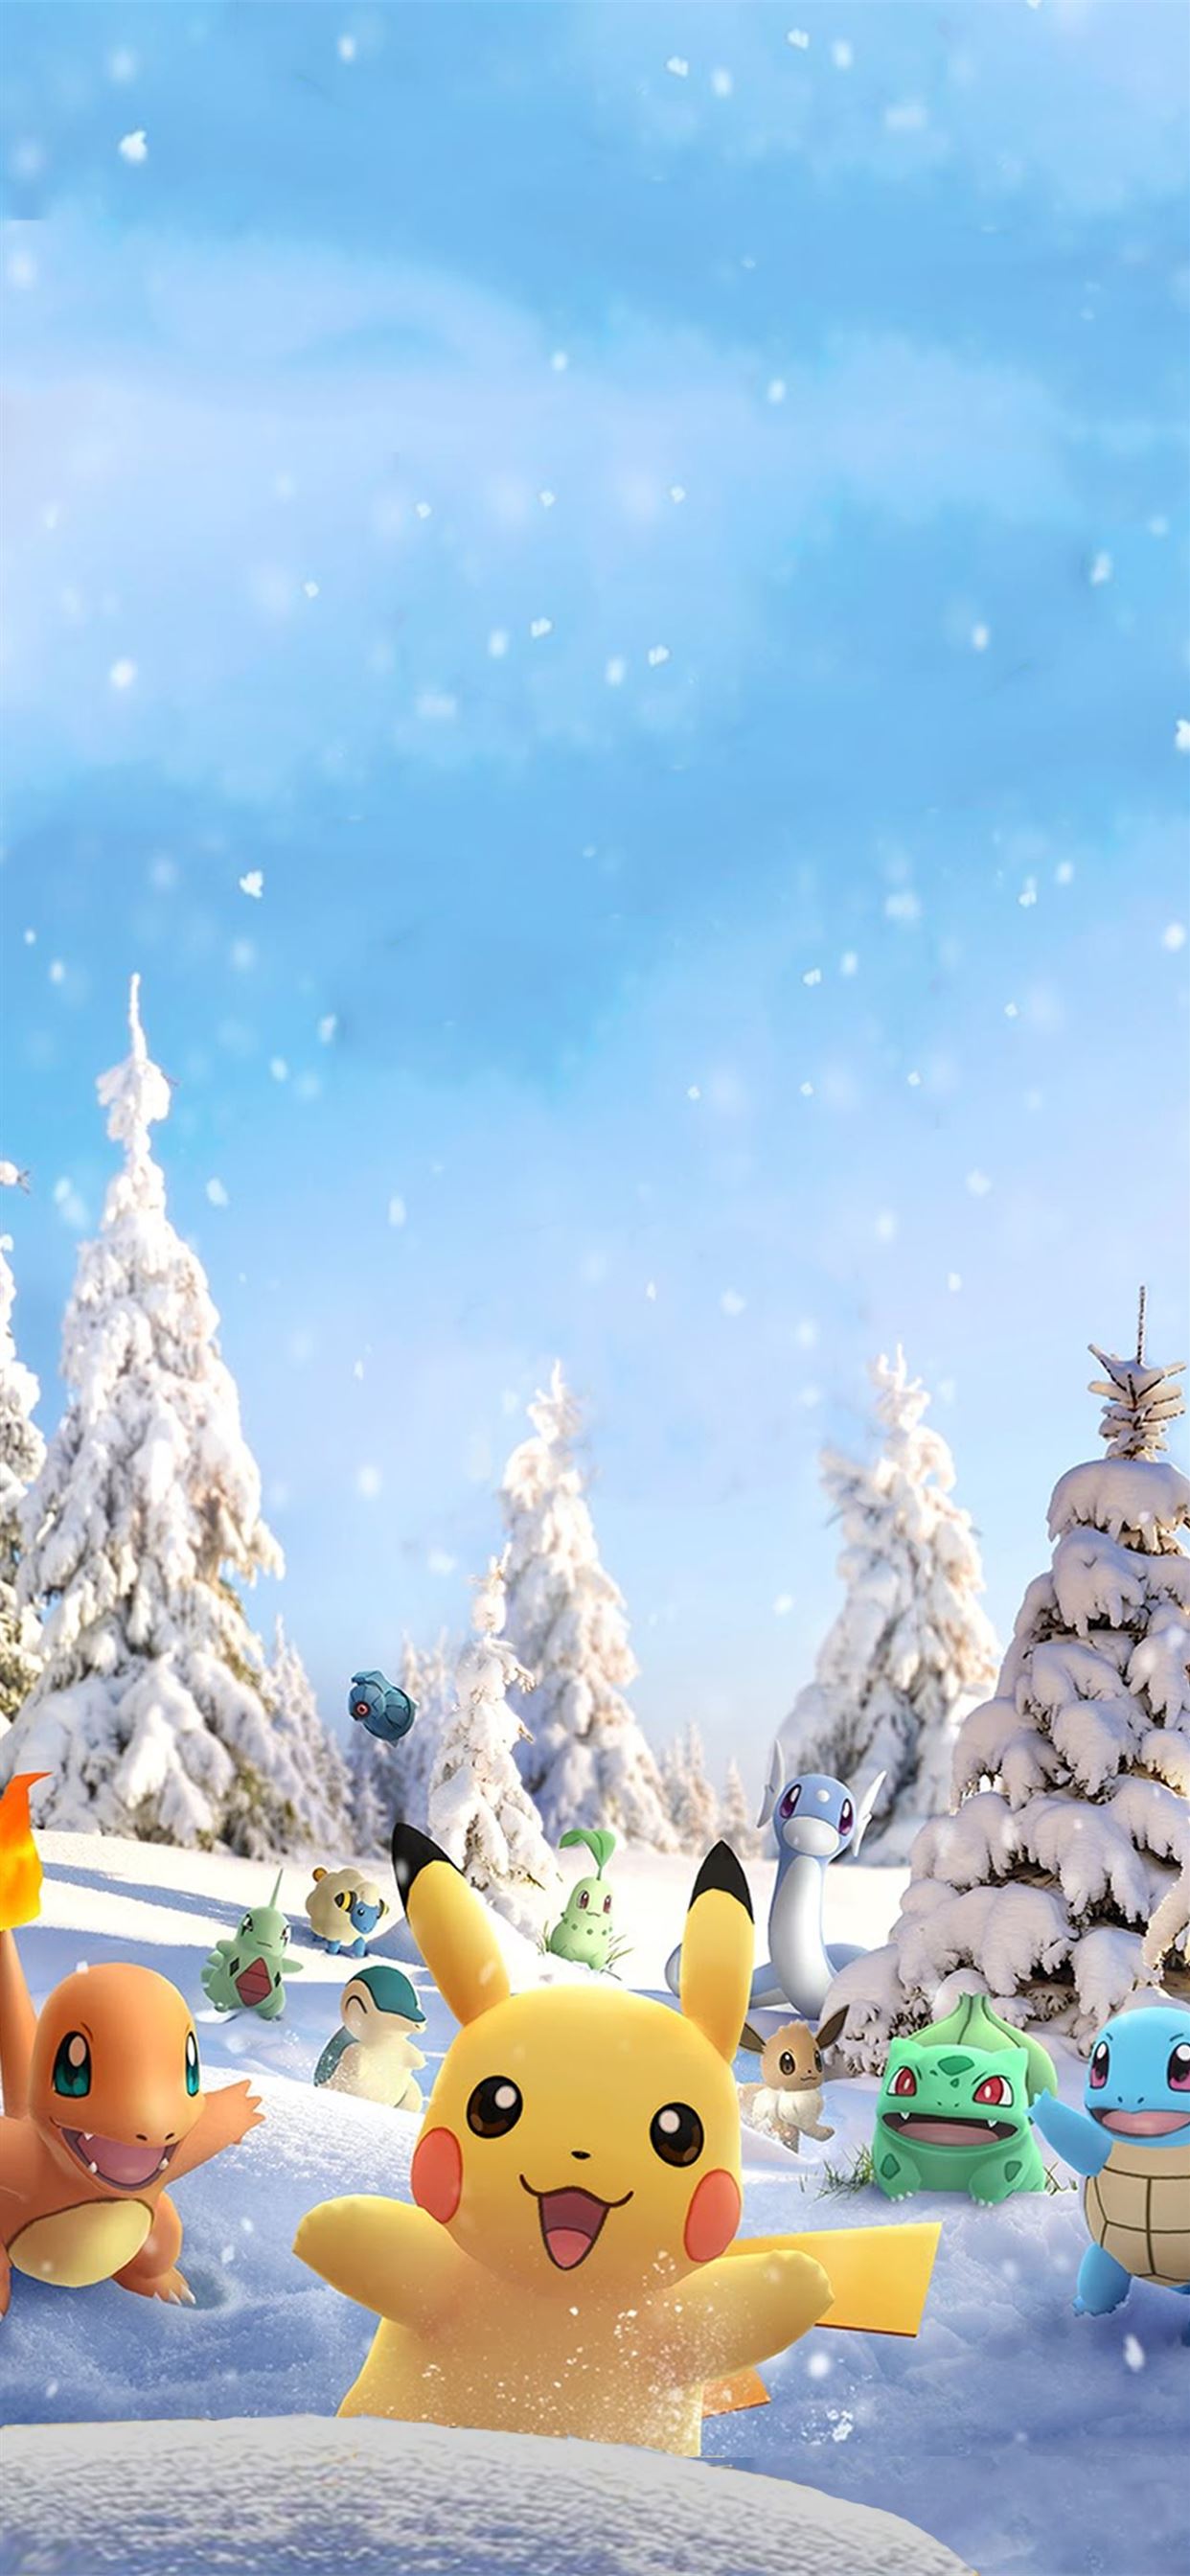 Chào đón mùa đông cùng với hình nền Pokemon Go miễn phí cho iPhone! Hãy click vào hình ảnh liên quan để tải về các hình nền Pikachu, Eevee và các loại Pokemon khác với màu sắc và phong cách đầy sáng tạo để trang trí cho chiếc điện thoại của bạn.